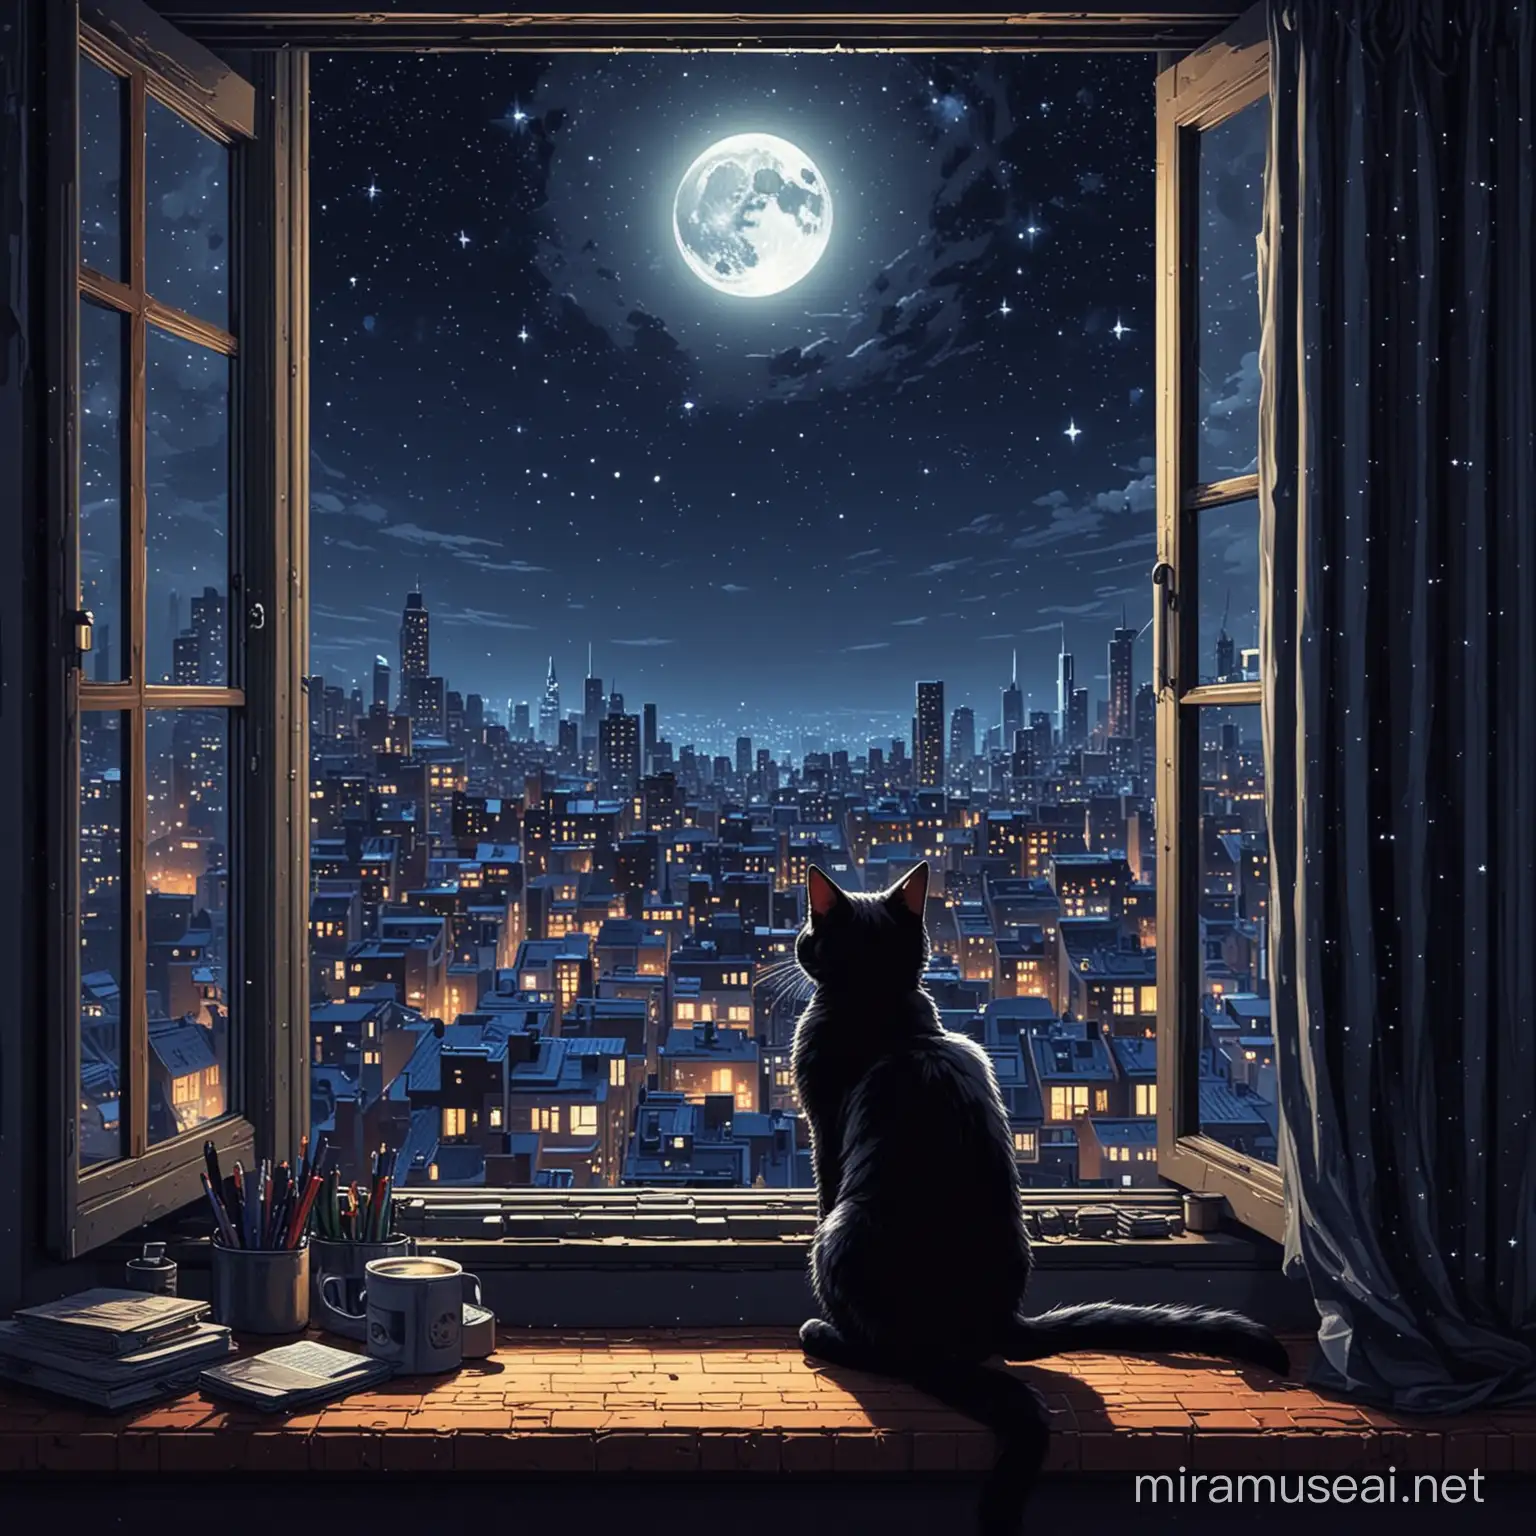 черный кот, смотрит в окно на луну, за окном звездное небо, ночной город невыской застройки, рядом с котом включенный компьютер, пиксель арт